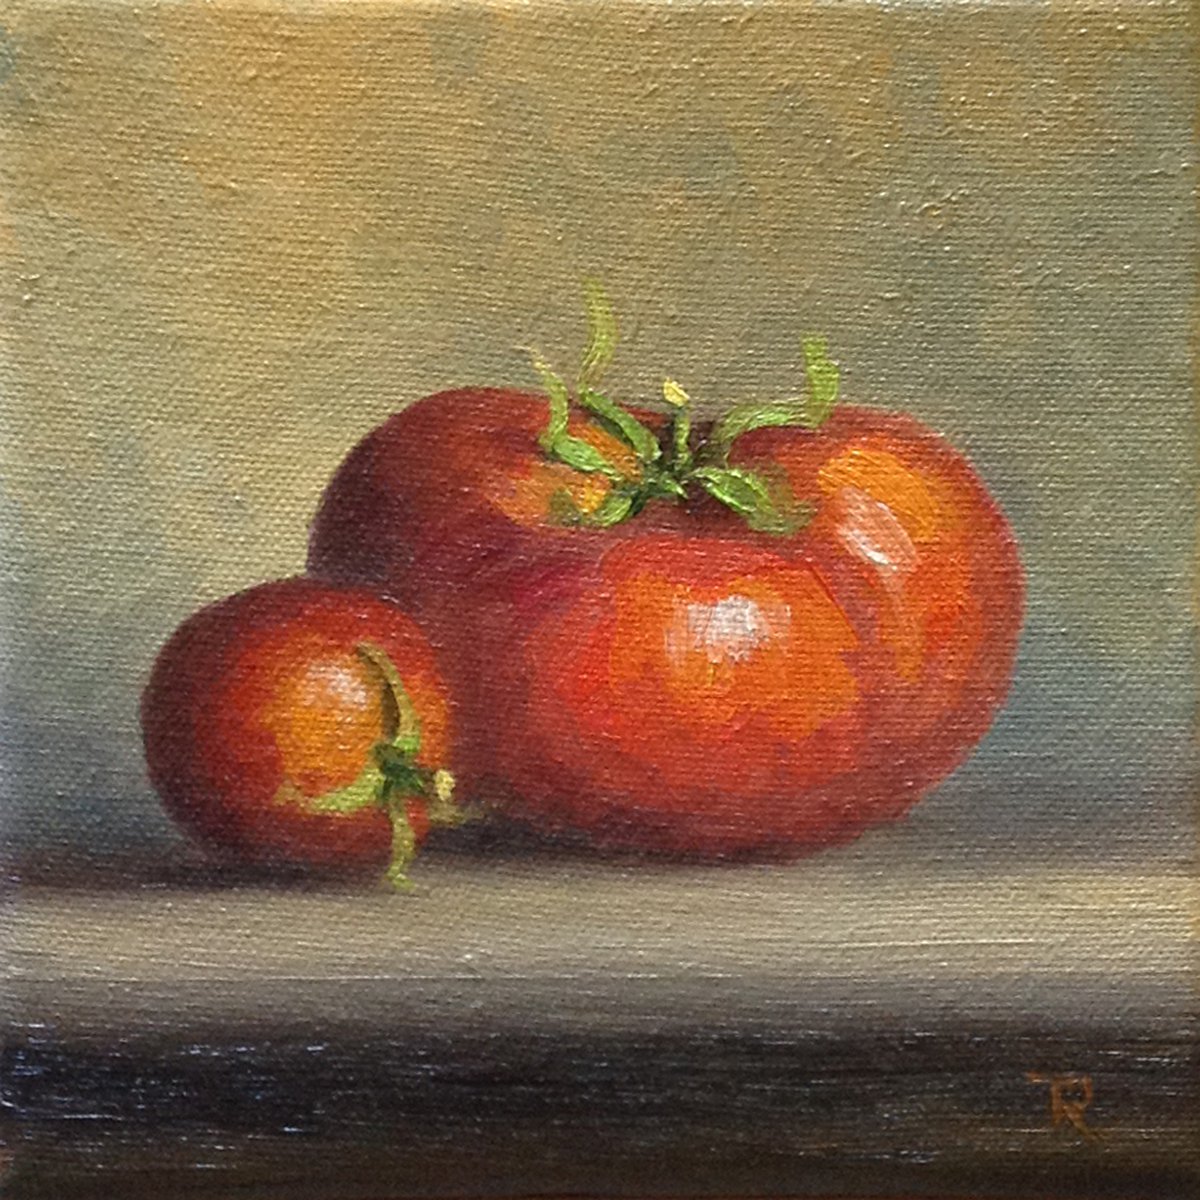 Tomatoes by Tatiana Roulin